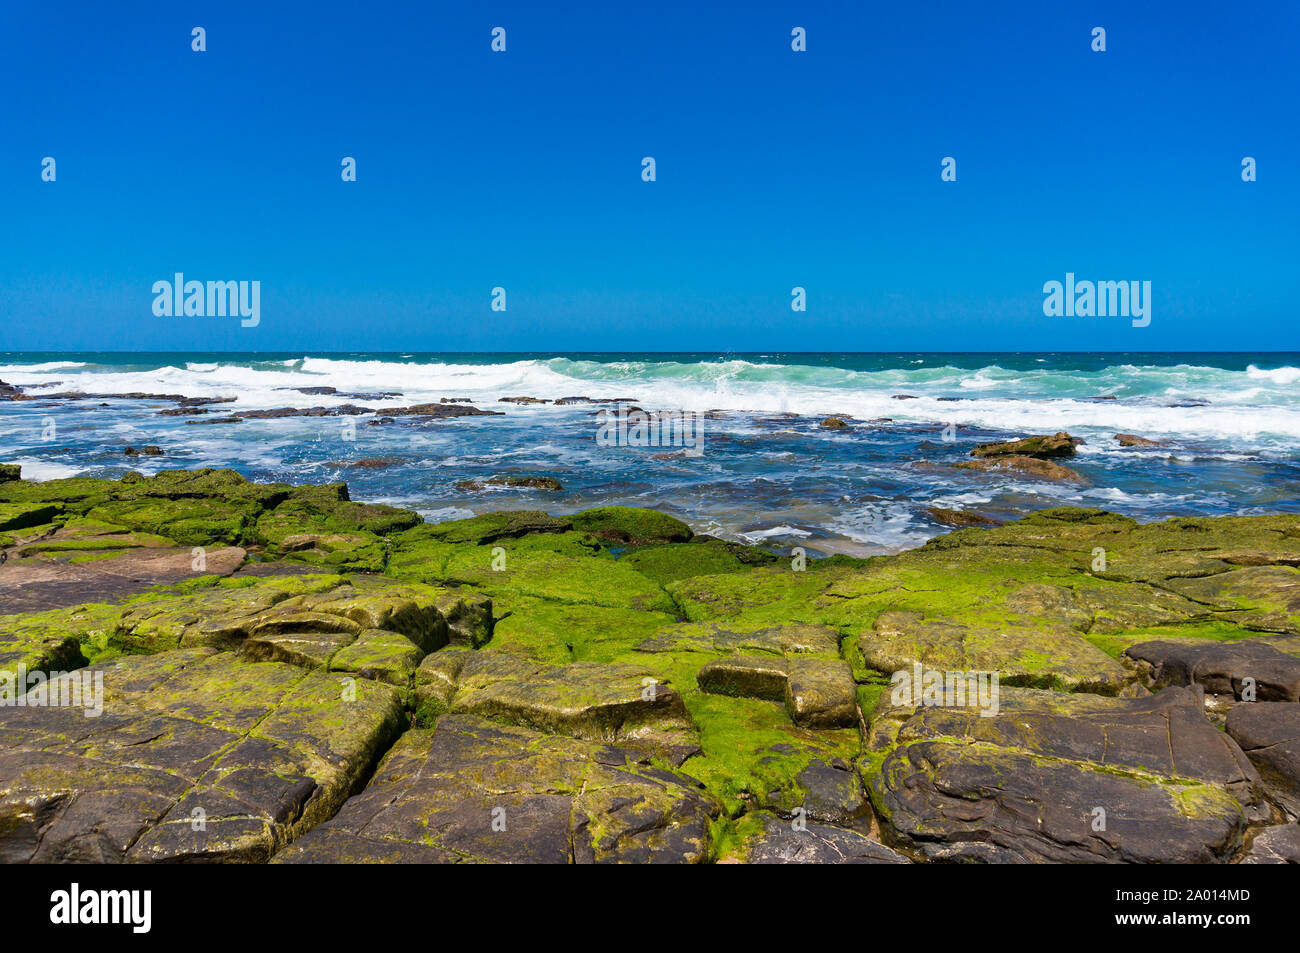 Bellissimo paesaggio marino di ocean shore coperto con Bright Green moss, alghe sul giorno chiaro Foto Stock